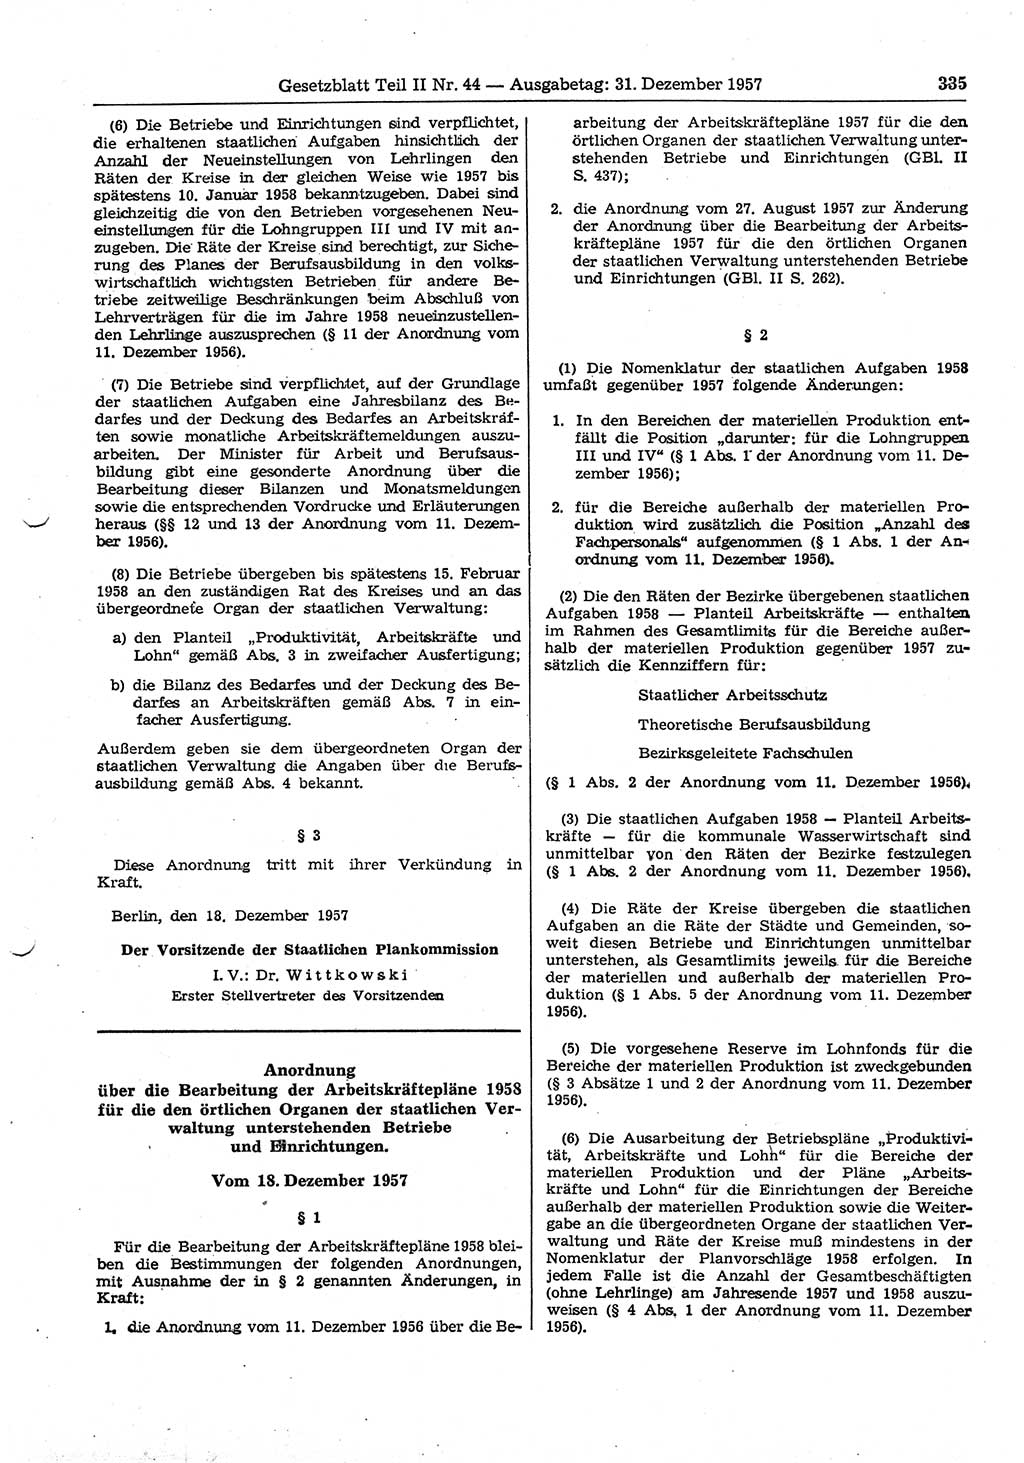 Gesetzblatt (GBl.) der Deutschen Demokratischen Republik (DDR) Teil ⅠⅠ 1957, Seite 335 (GBl. DDR ⅠⅠ 1957, S. 335)